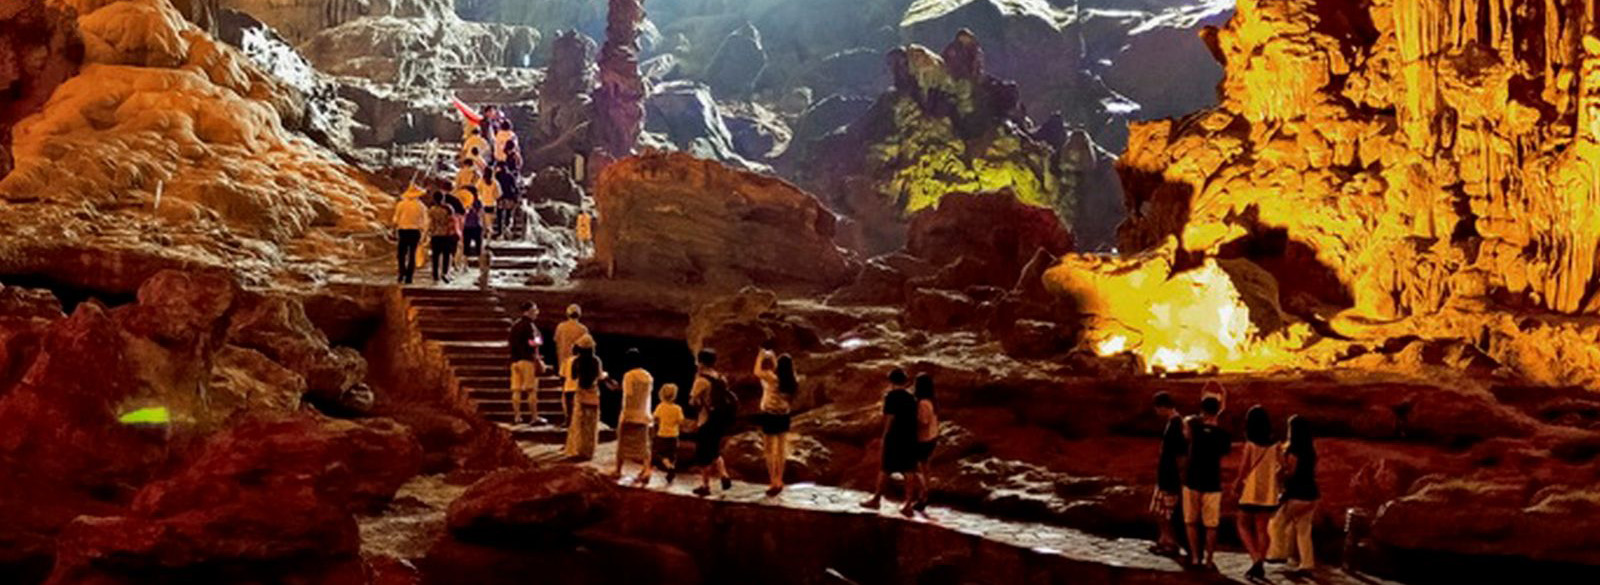 La grotte de Sung Sot